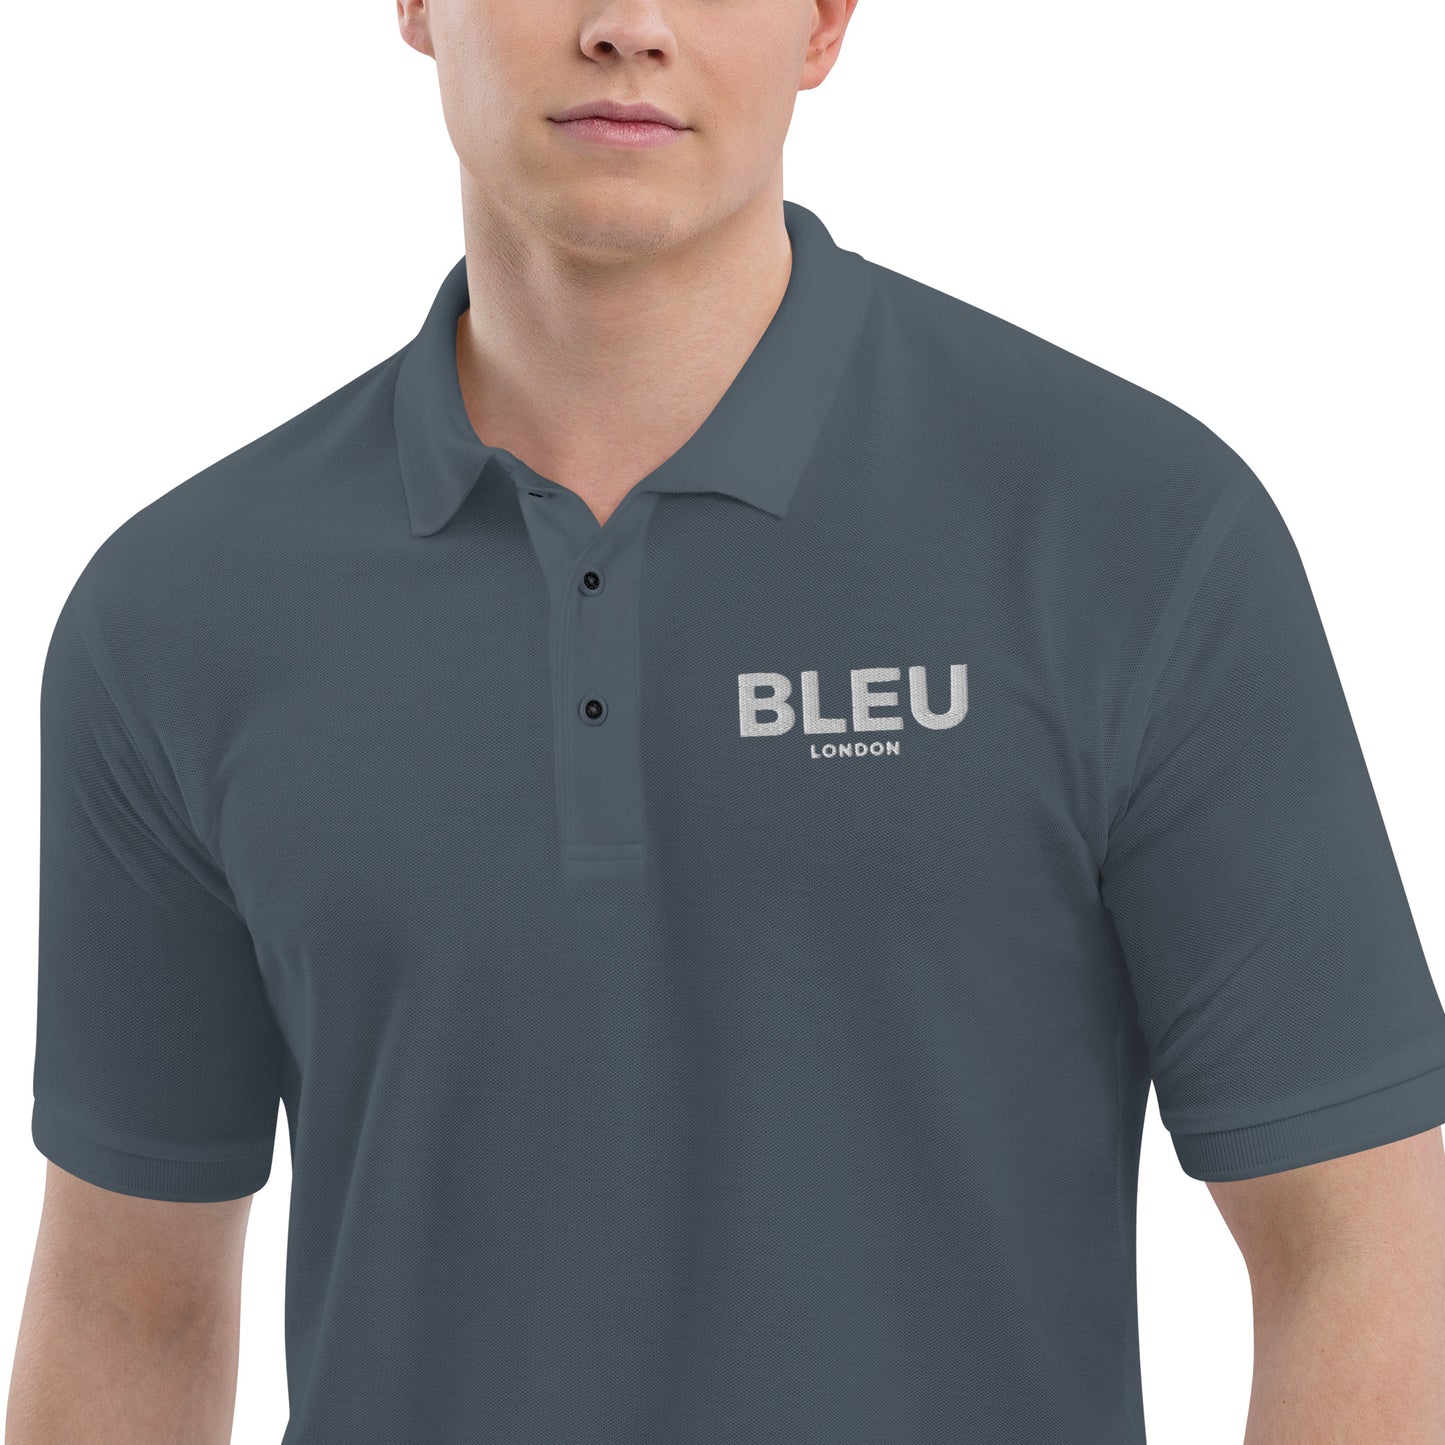 Bleu London Premium Men's Polo